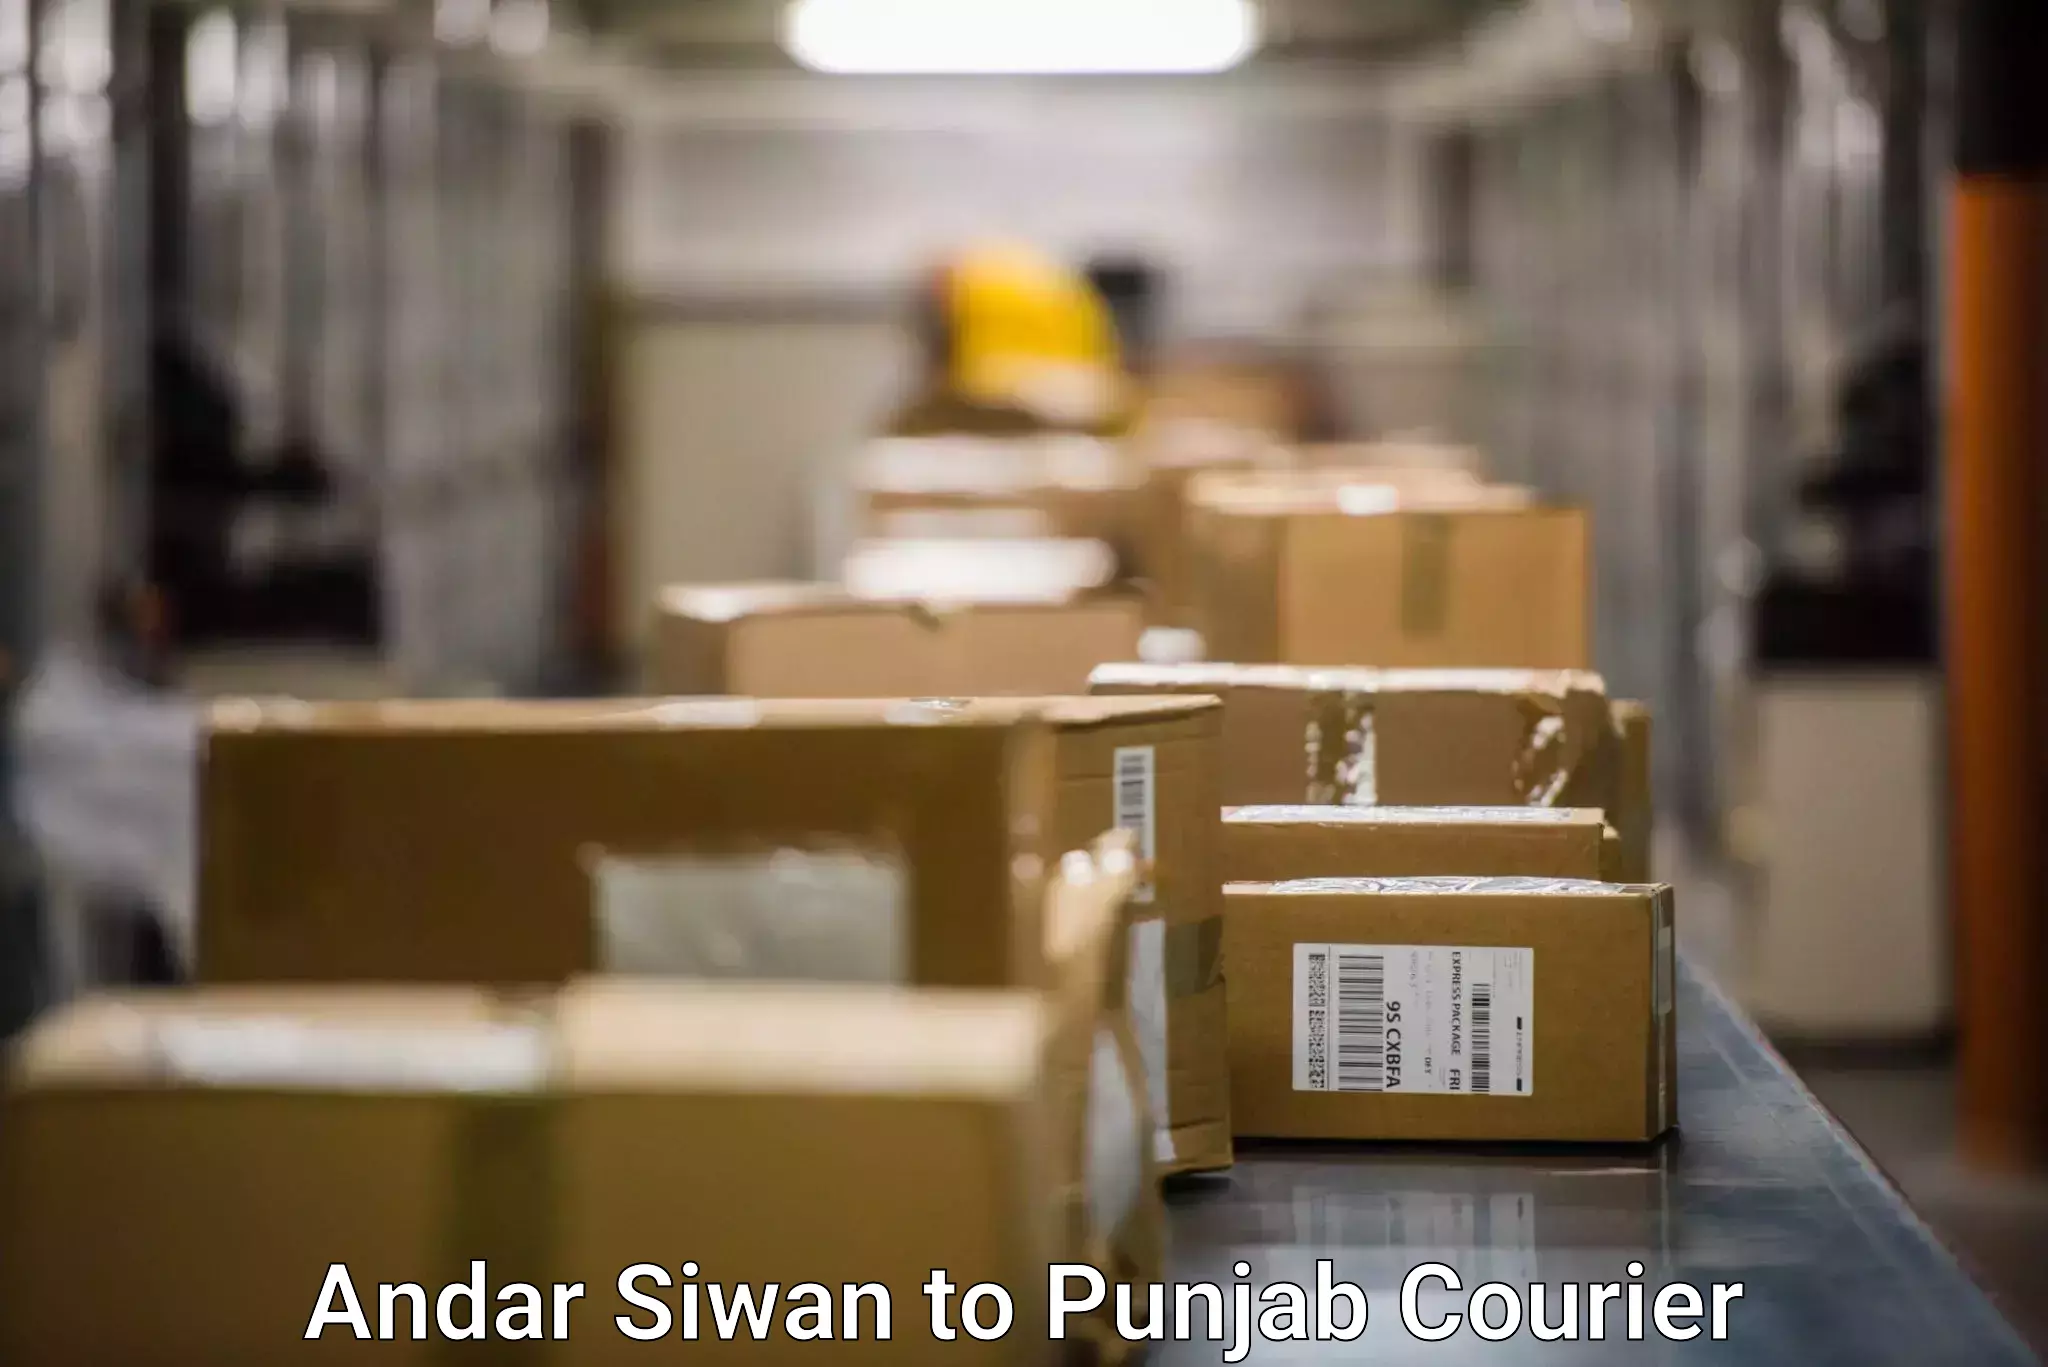 Efficient shipping platforms Andar Siwan to Sangrur